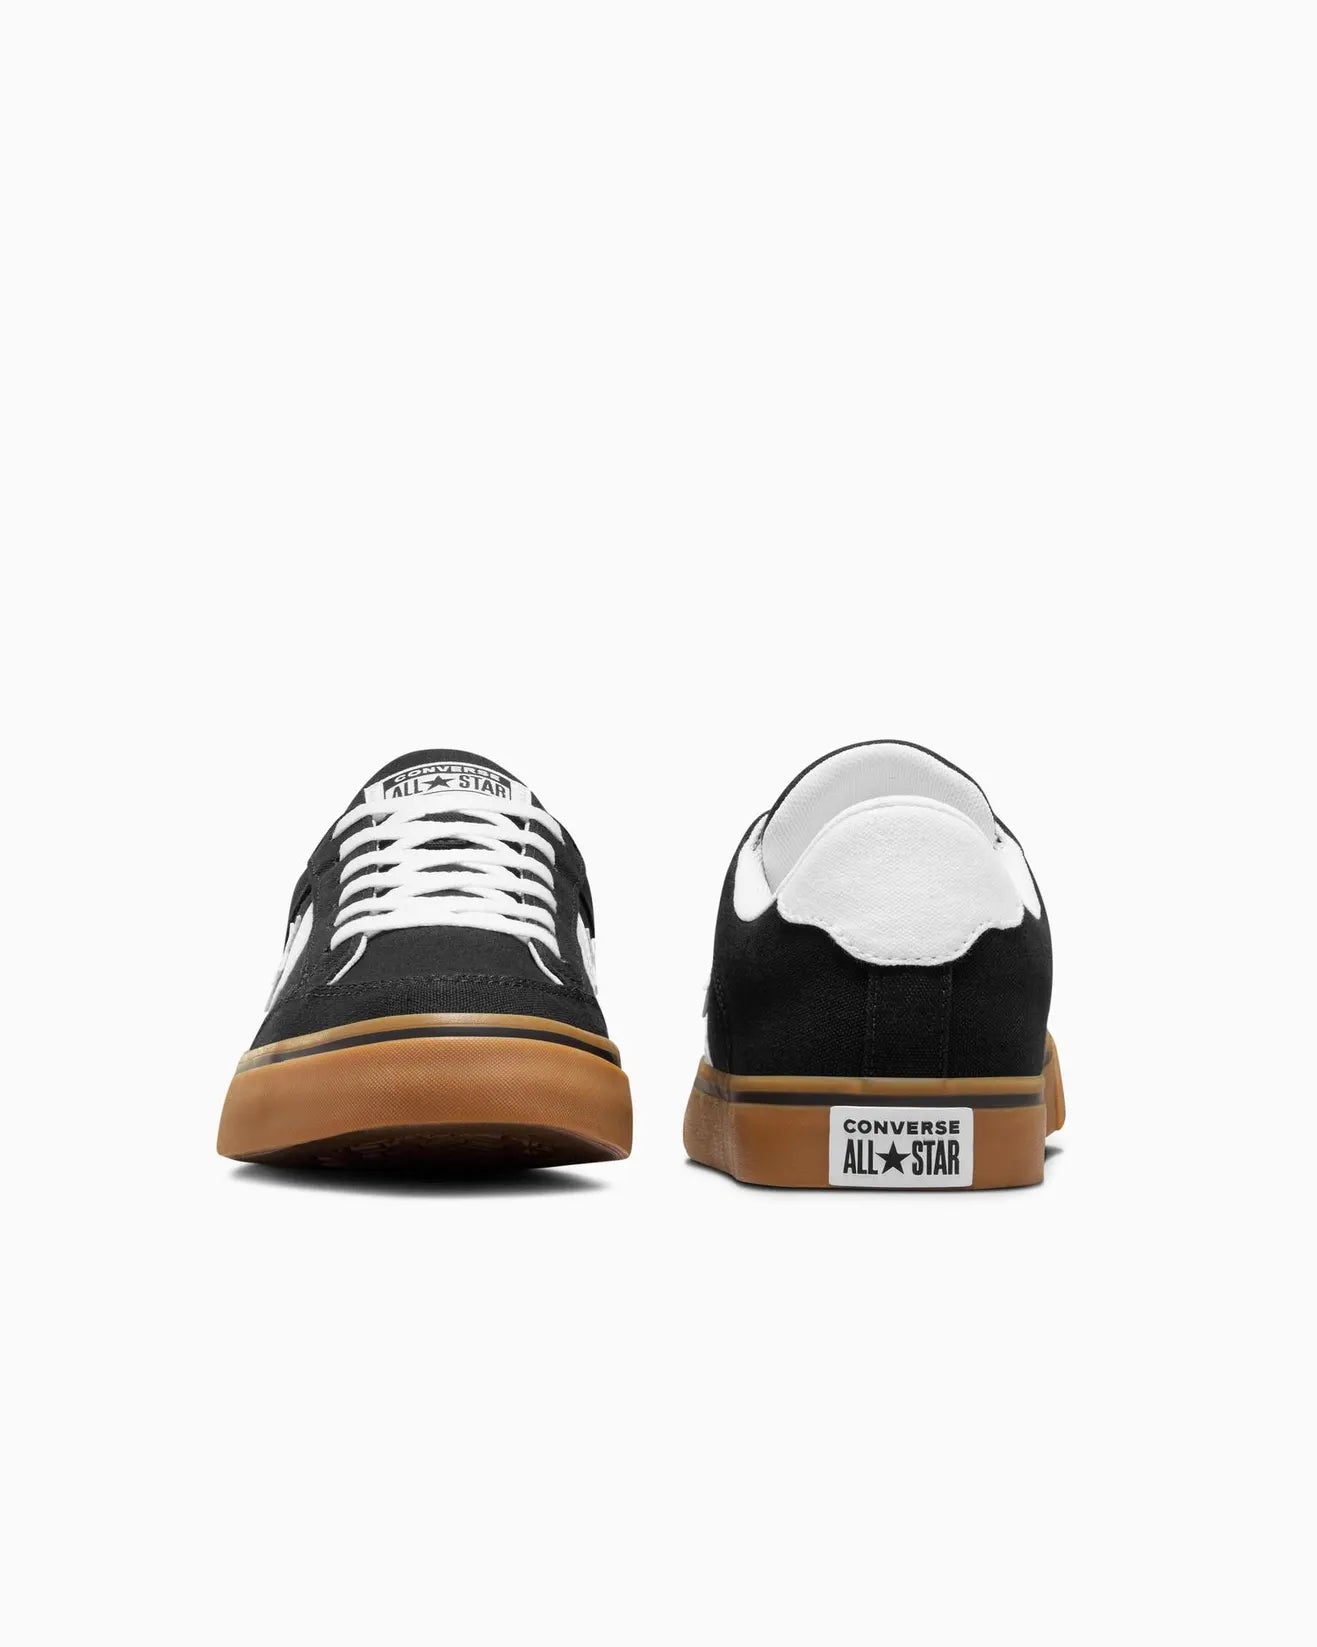 CONVERSE Tobin Low Shoe - Black/White/Gum